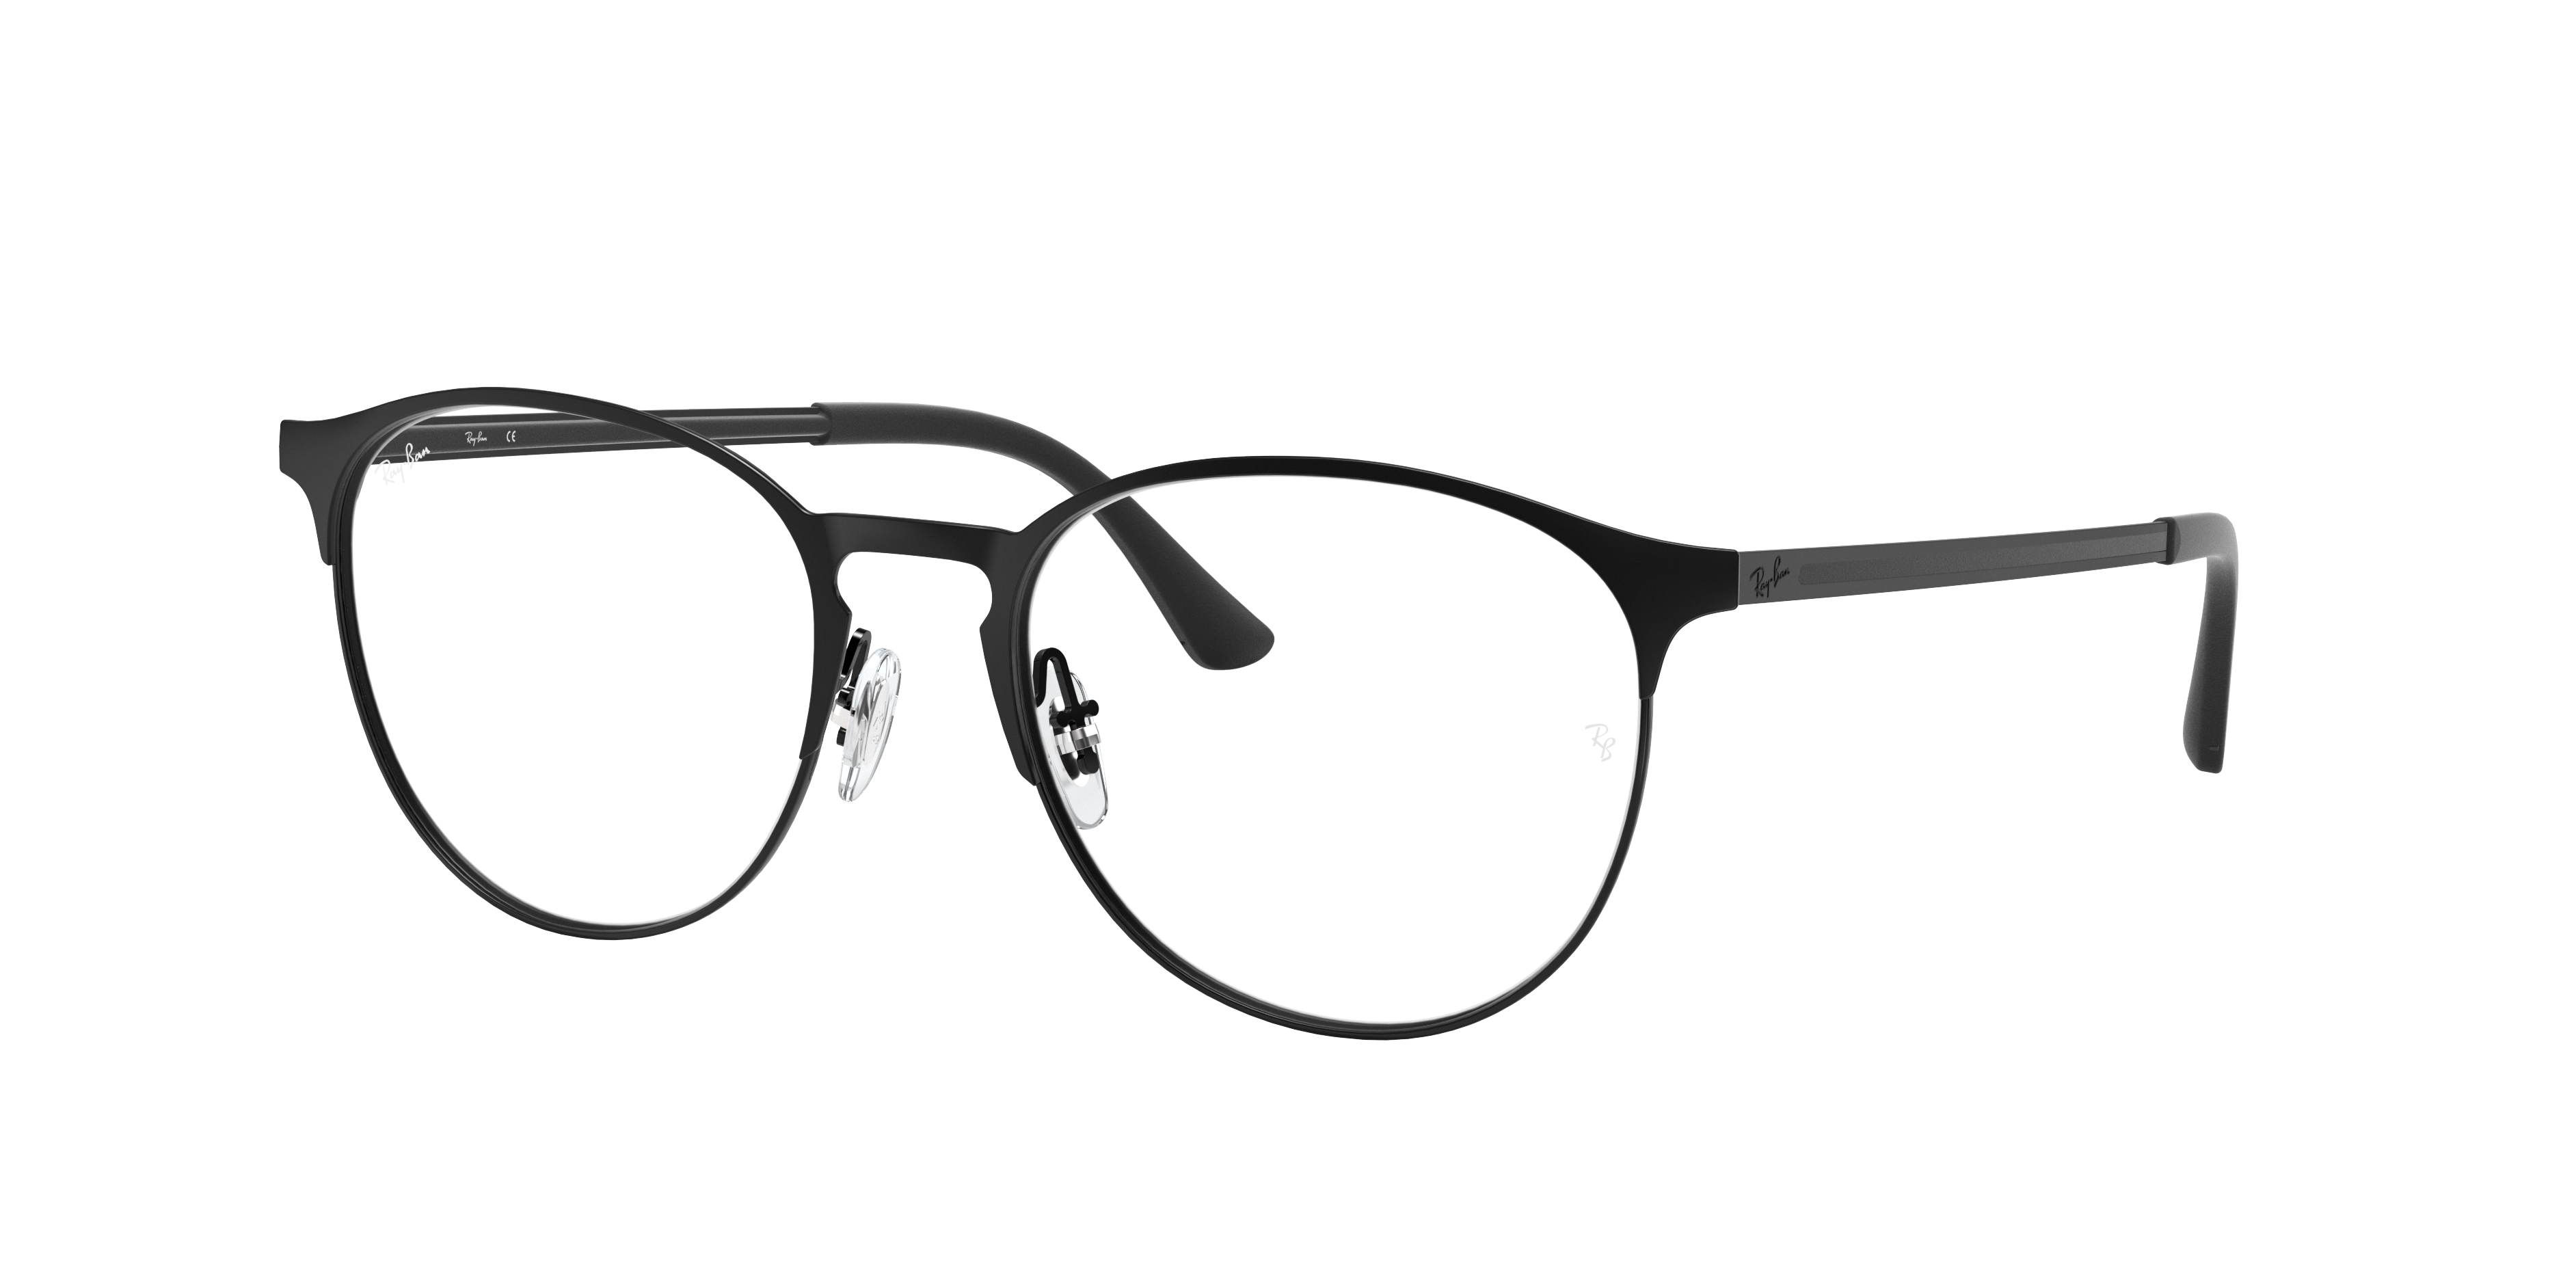 ray ban sunglasses metal frame